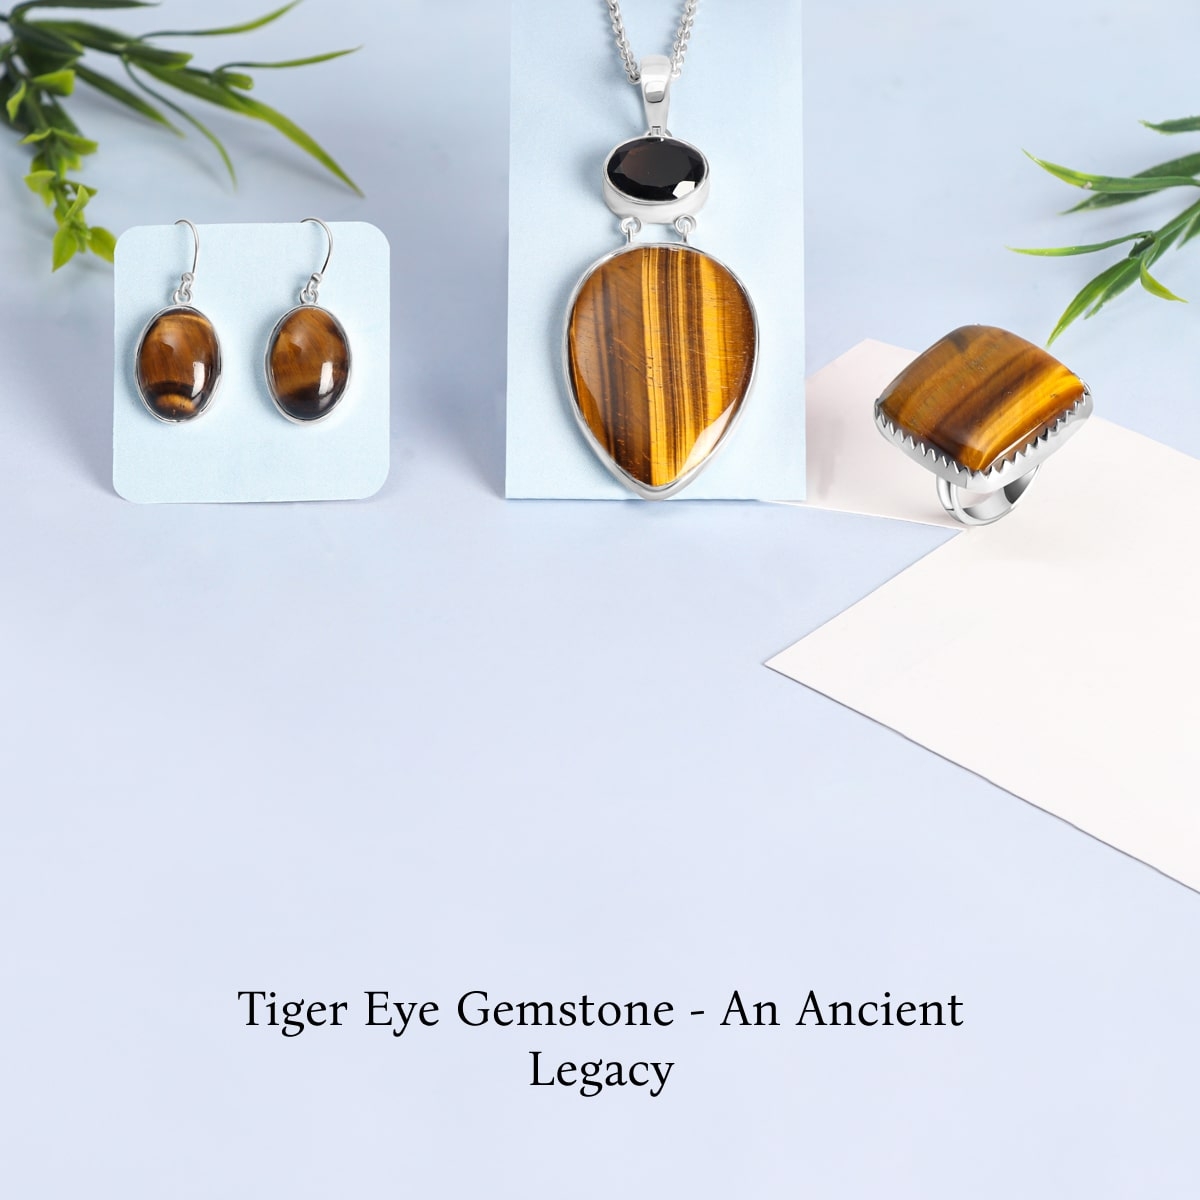 History of Tiger Eye Gemstone